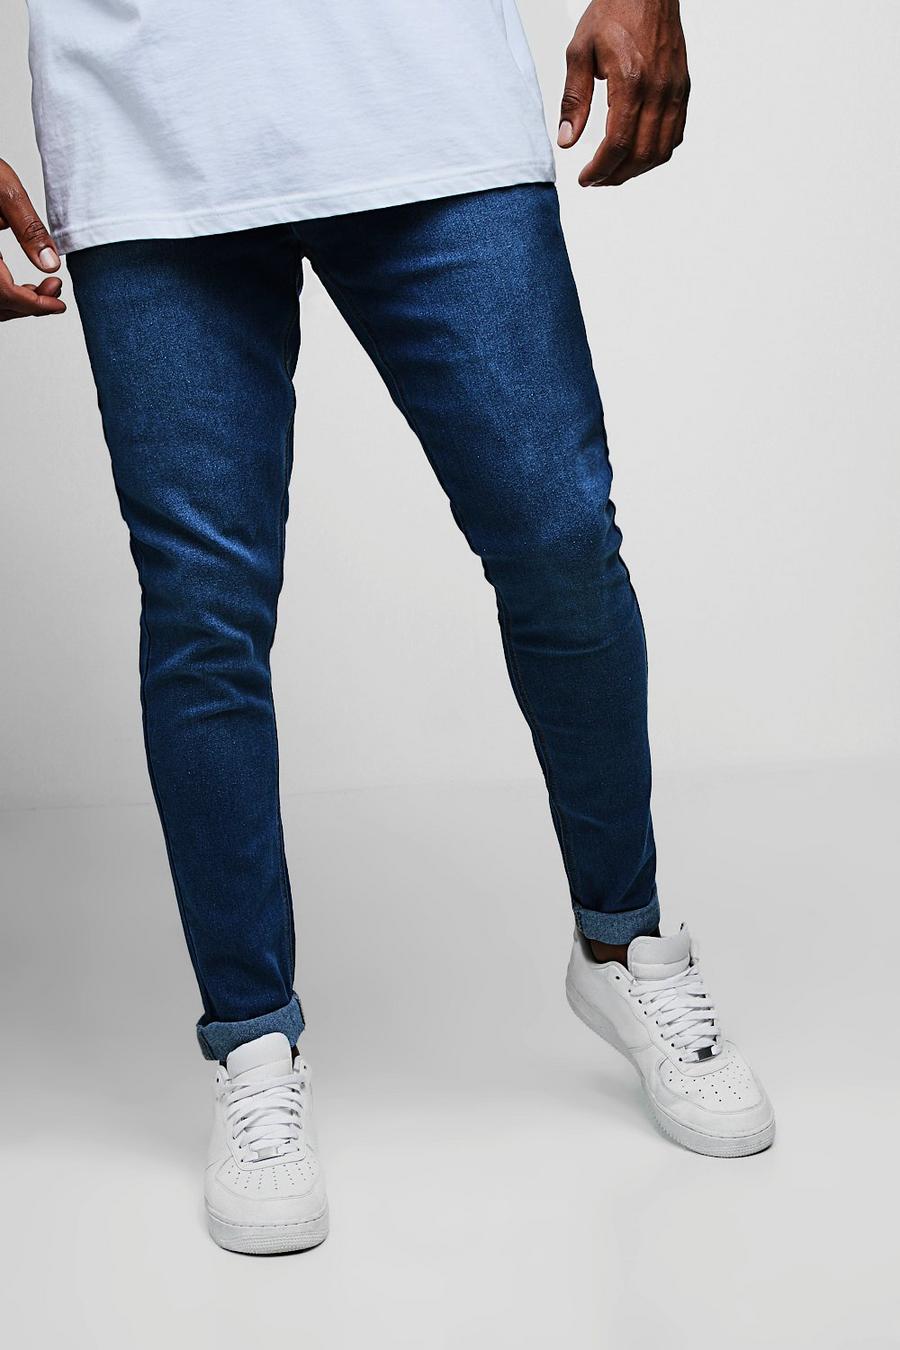 מכנסי ג'ינס כחולים ומשופשפים בגזרה צרה לגברים גדולים וגבוהים image number 1